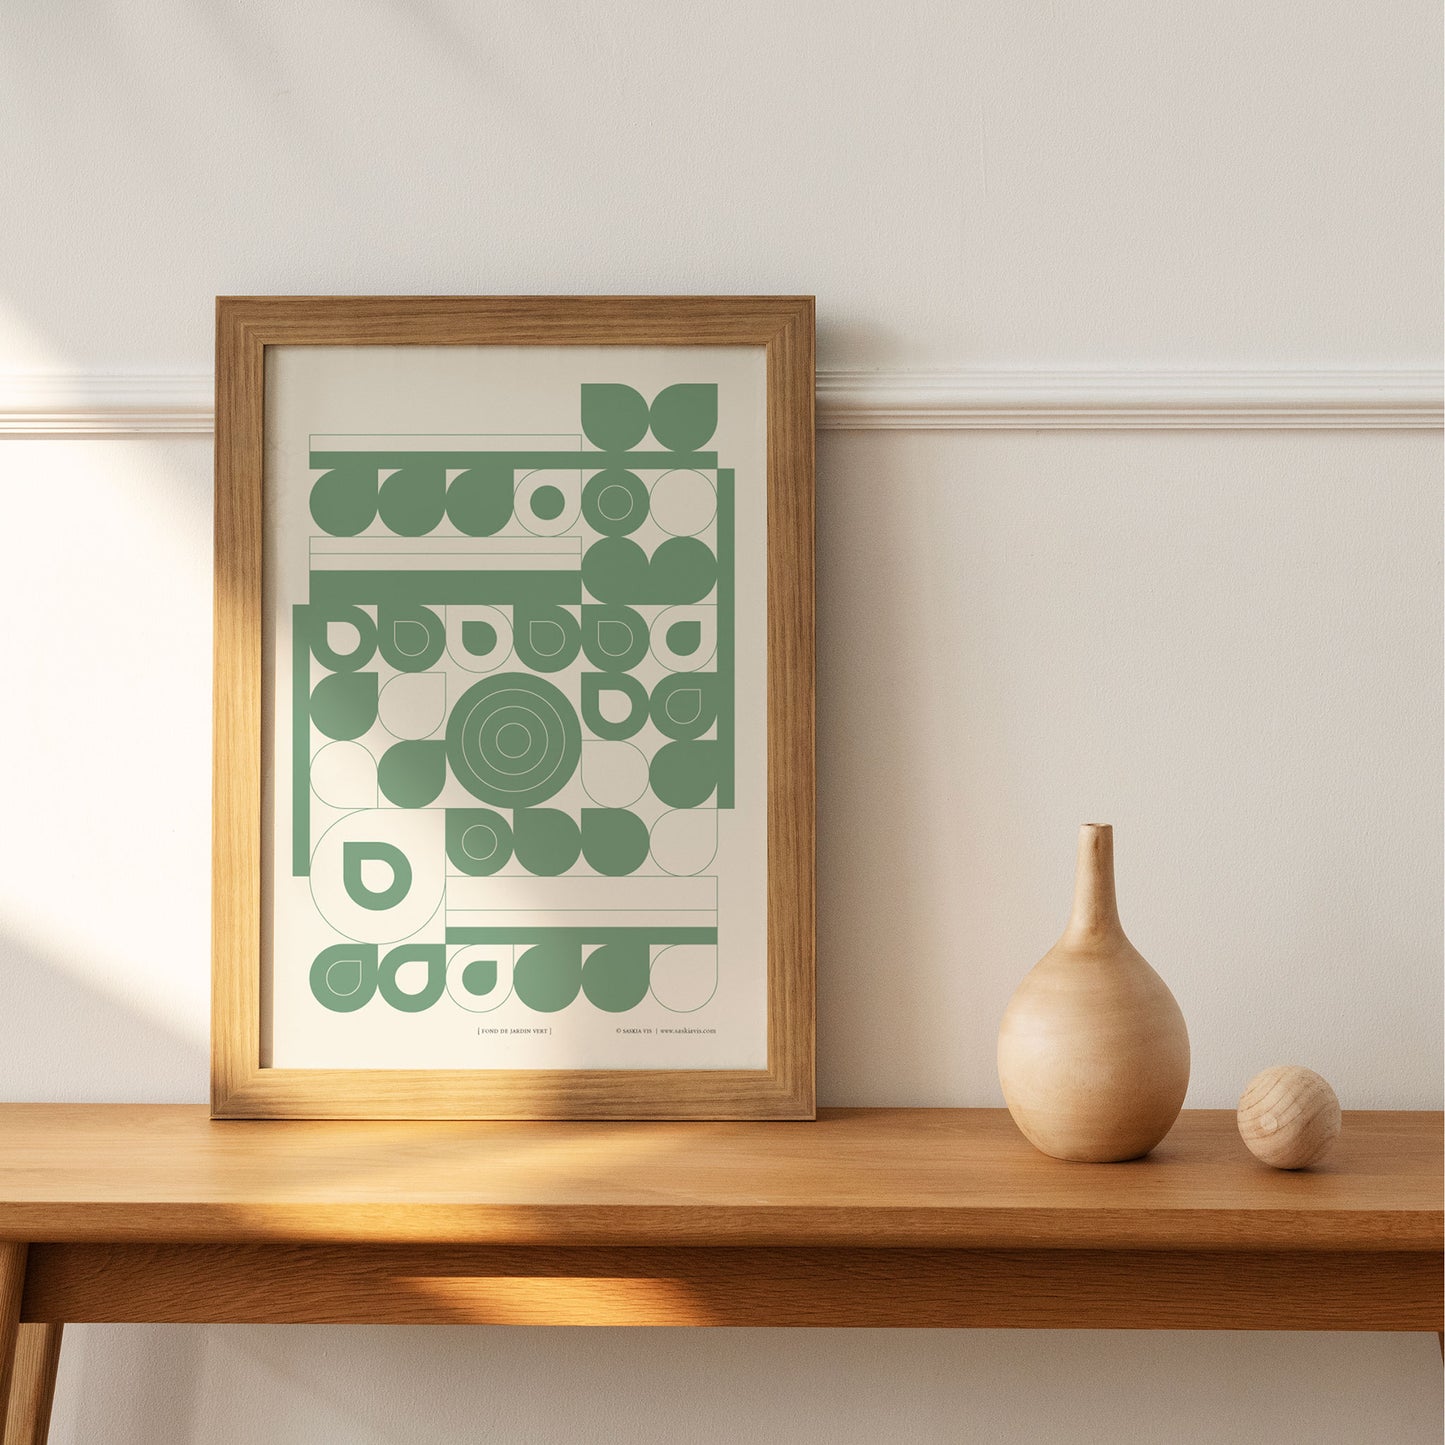 Productafbeelding poster "font de jardin vert" ingelijst in een houten frame staande op een langwerpige bijzettafel